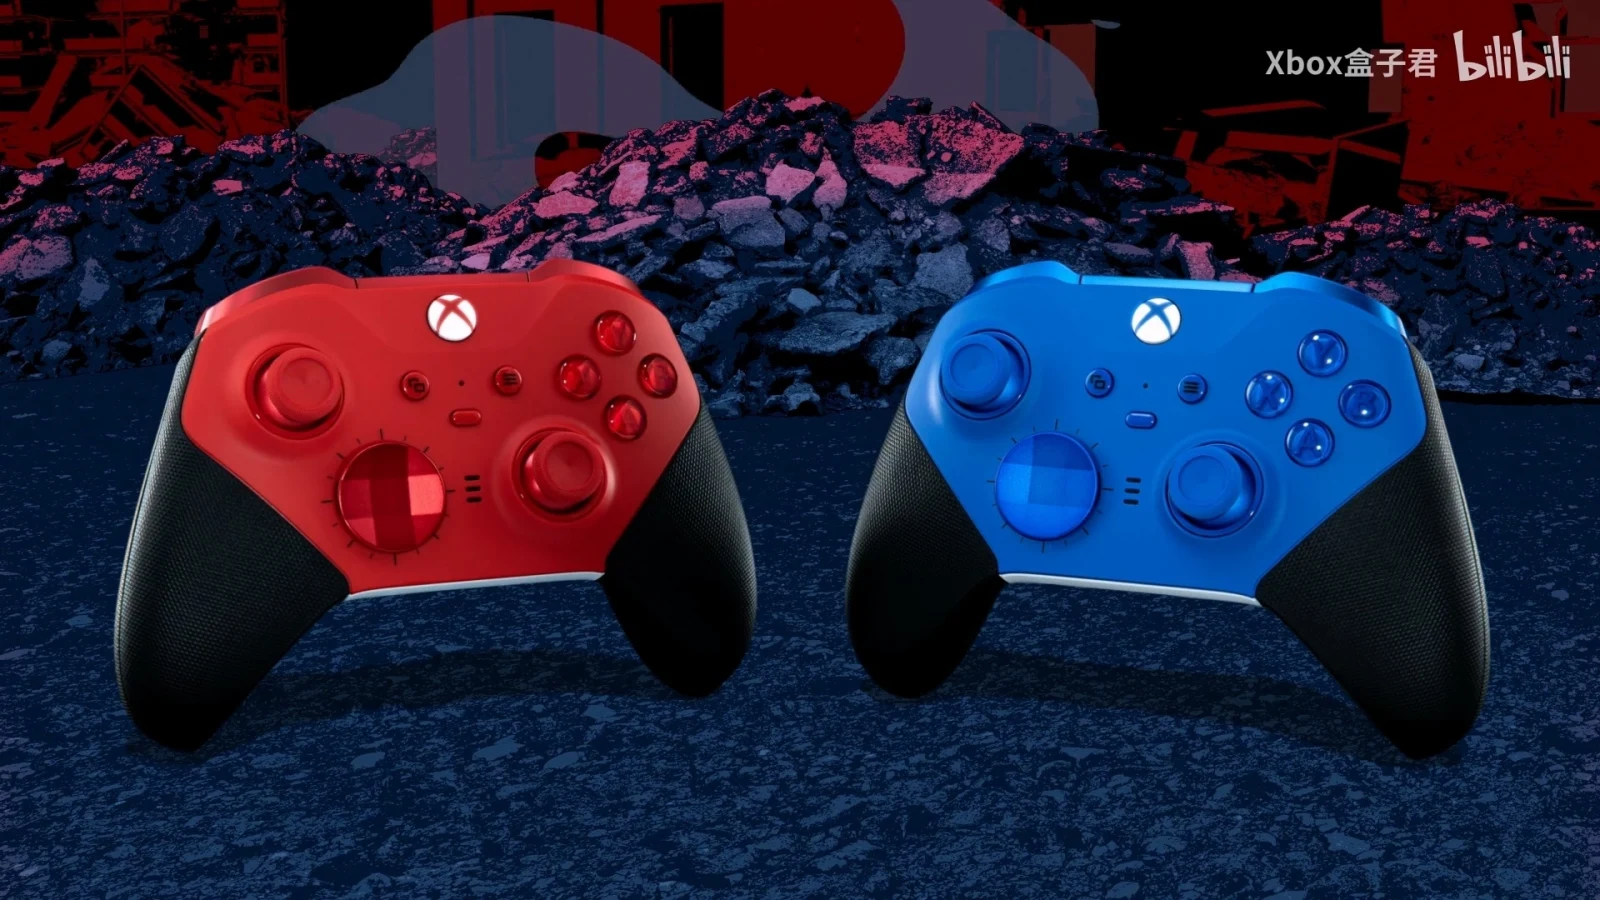 Xbox Elite无线控制器2代青春版红、蓝配色将于4月11日正式发售